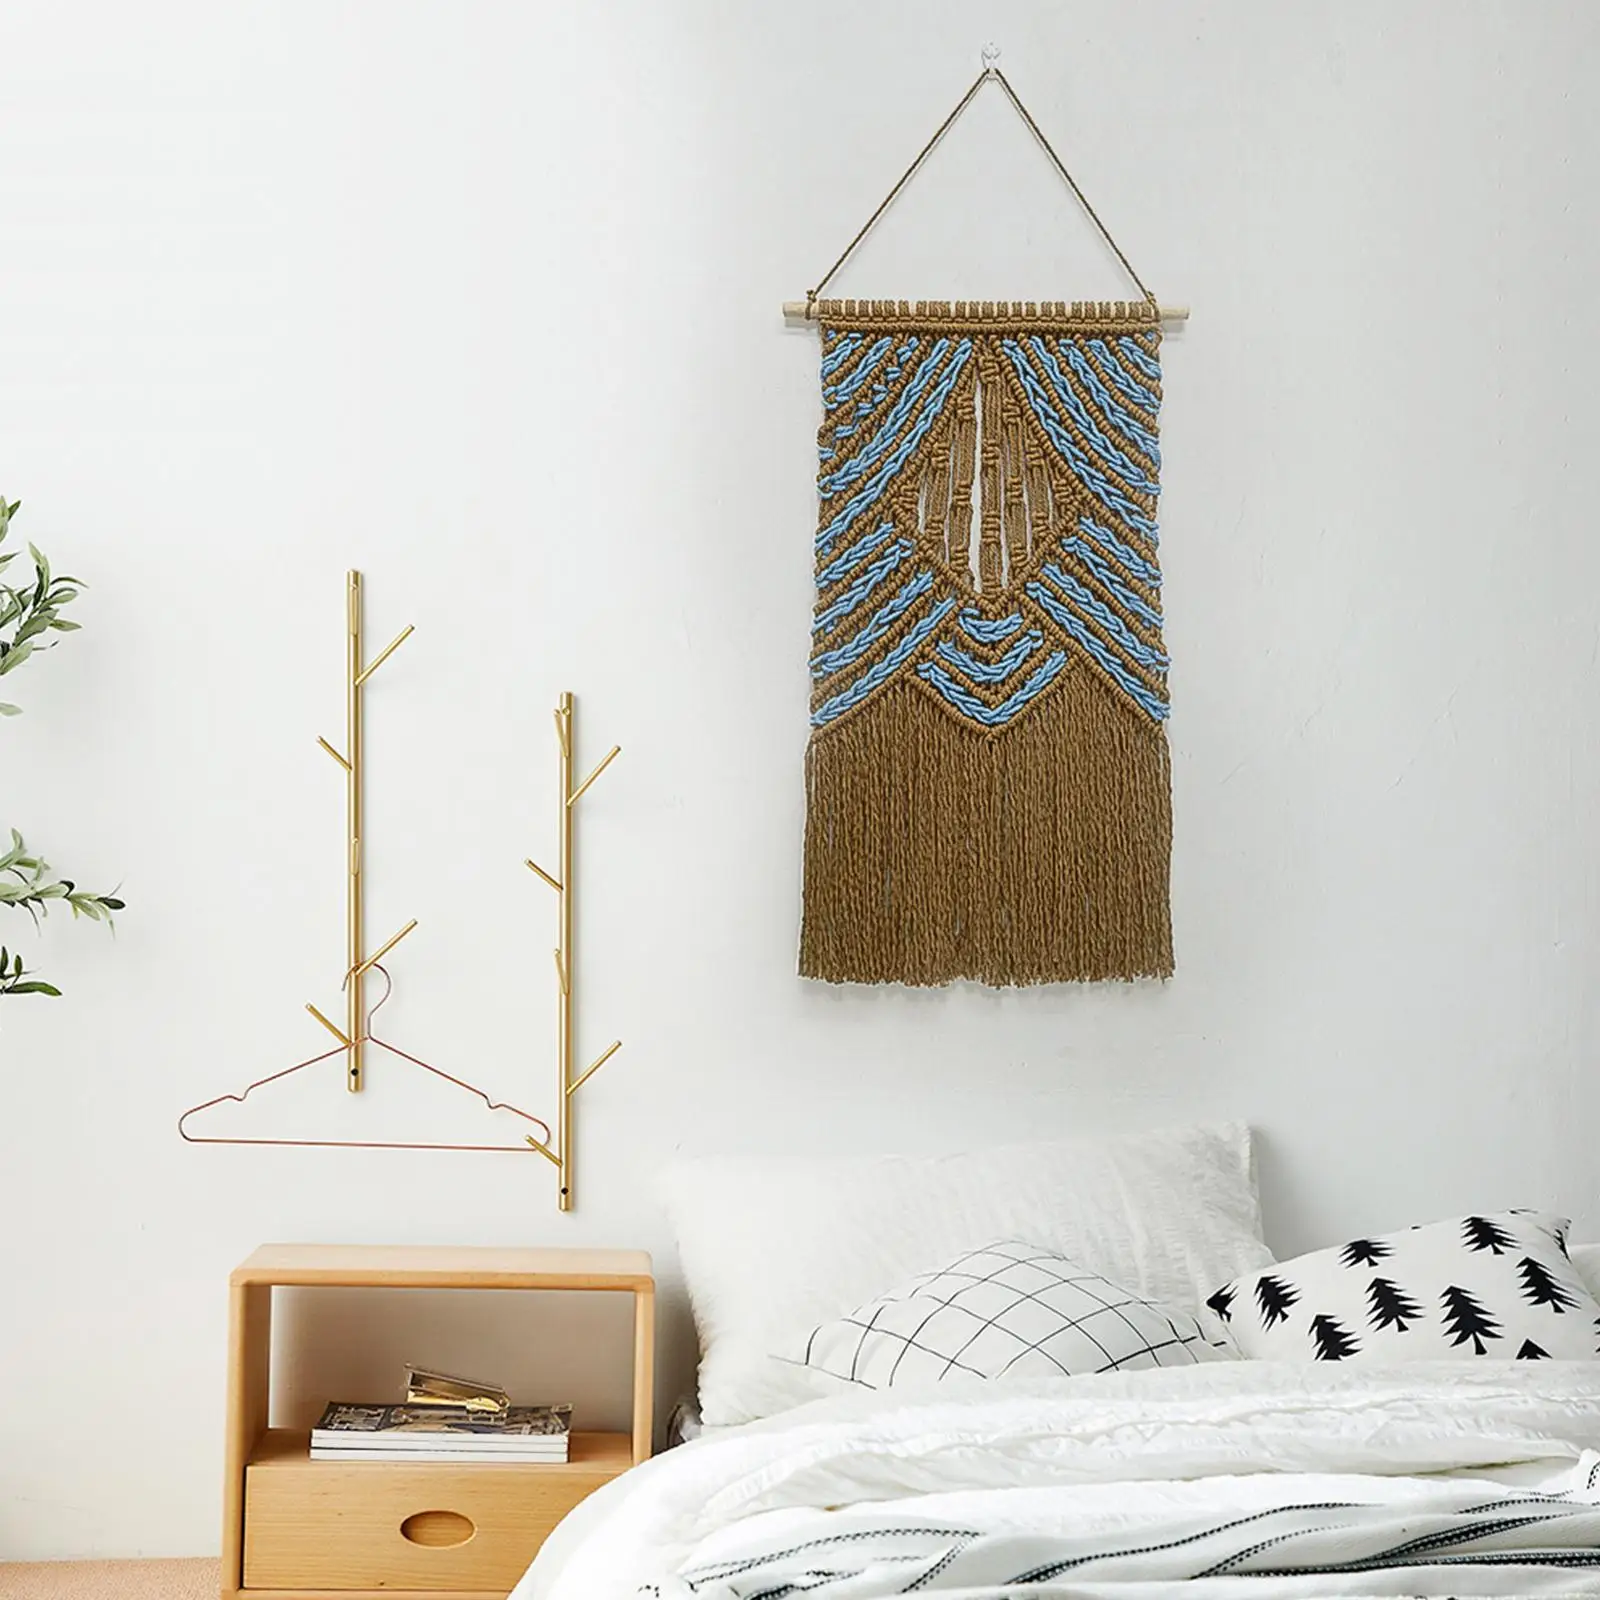 1* Wall Hanging Boho Handmade Kit Craft Fringe Handwoven Tapestry for Dorm Ornament Art Living Room Nursery